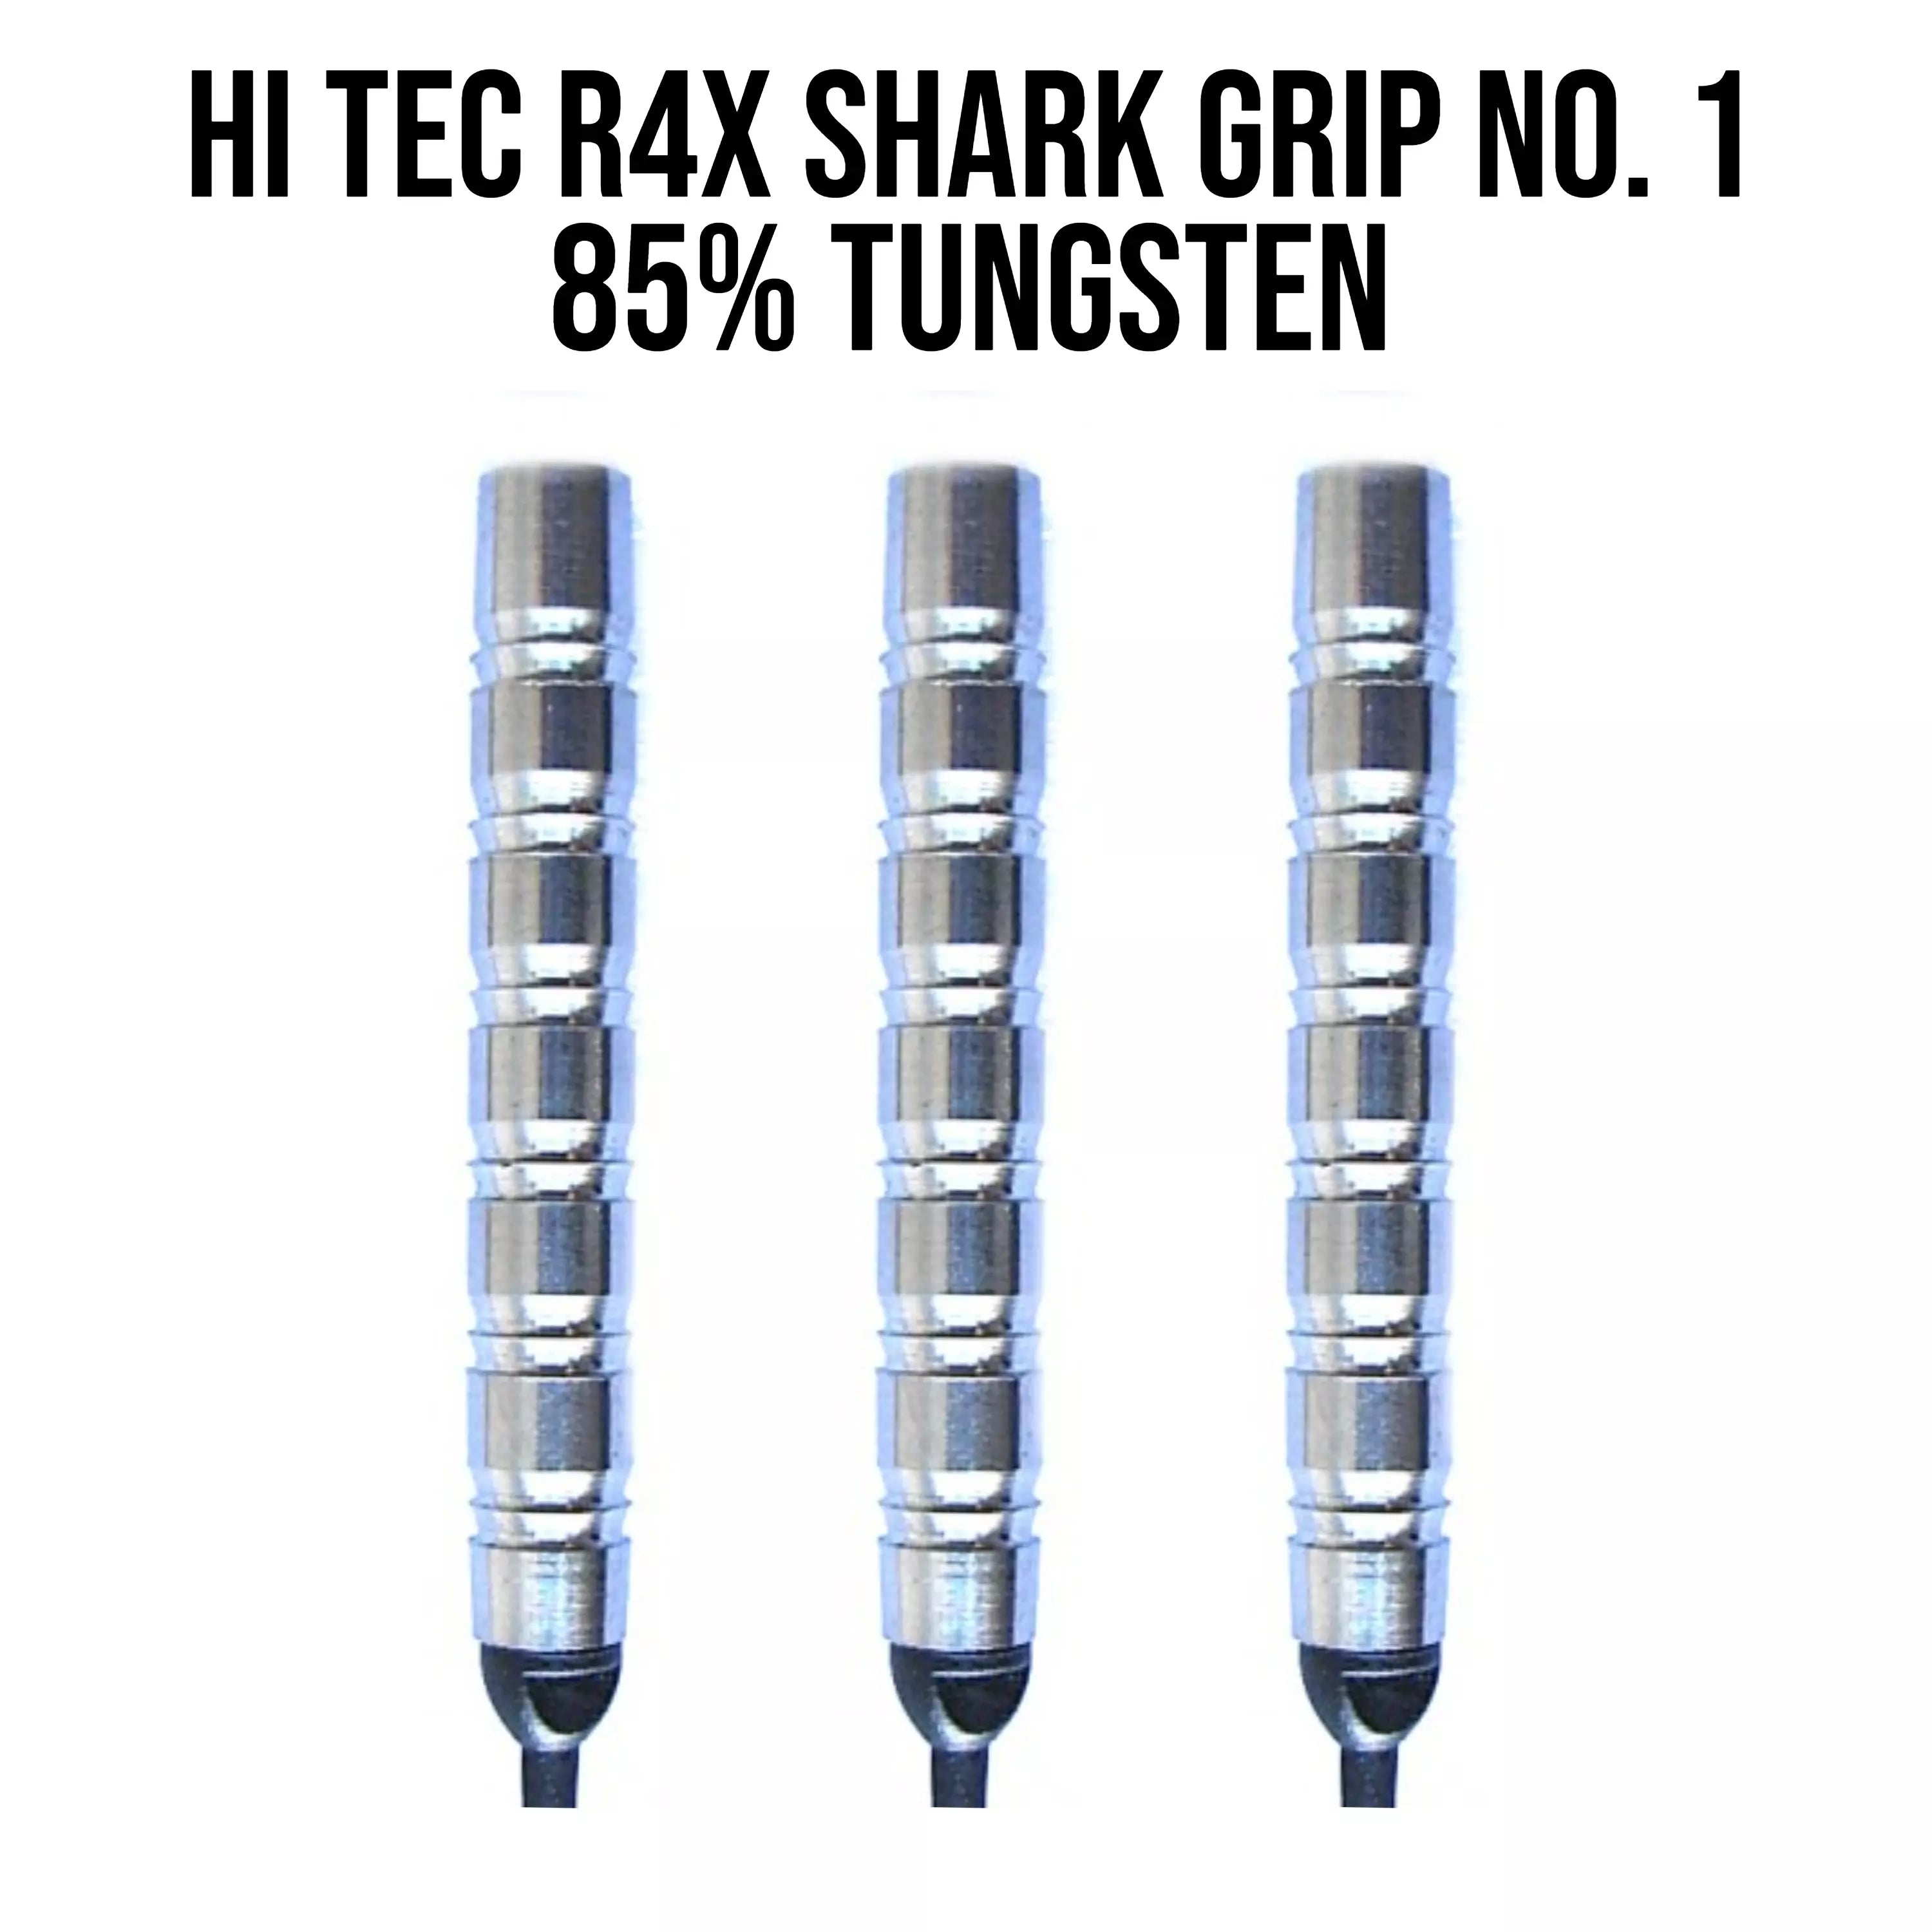 Hi Tec Shark No 1 - 85% Tungsten Softdartbarrels